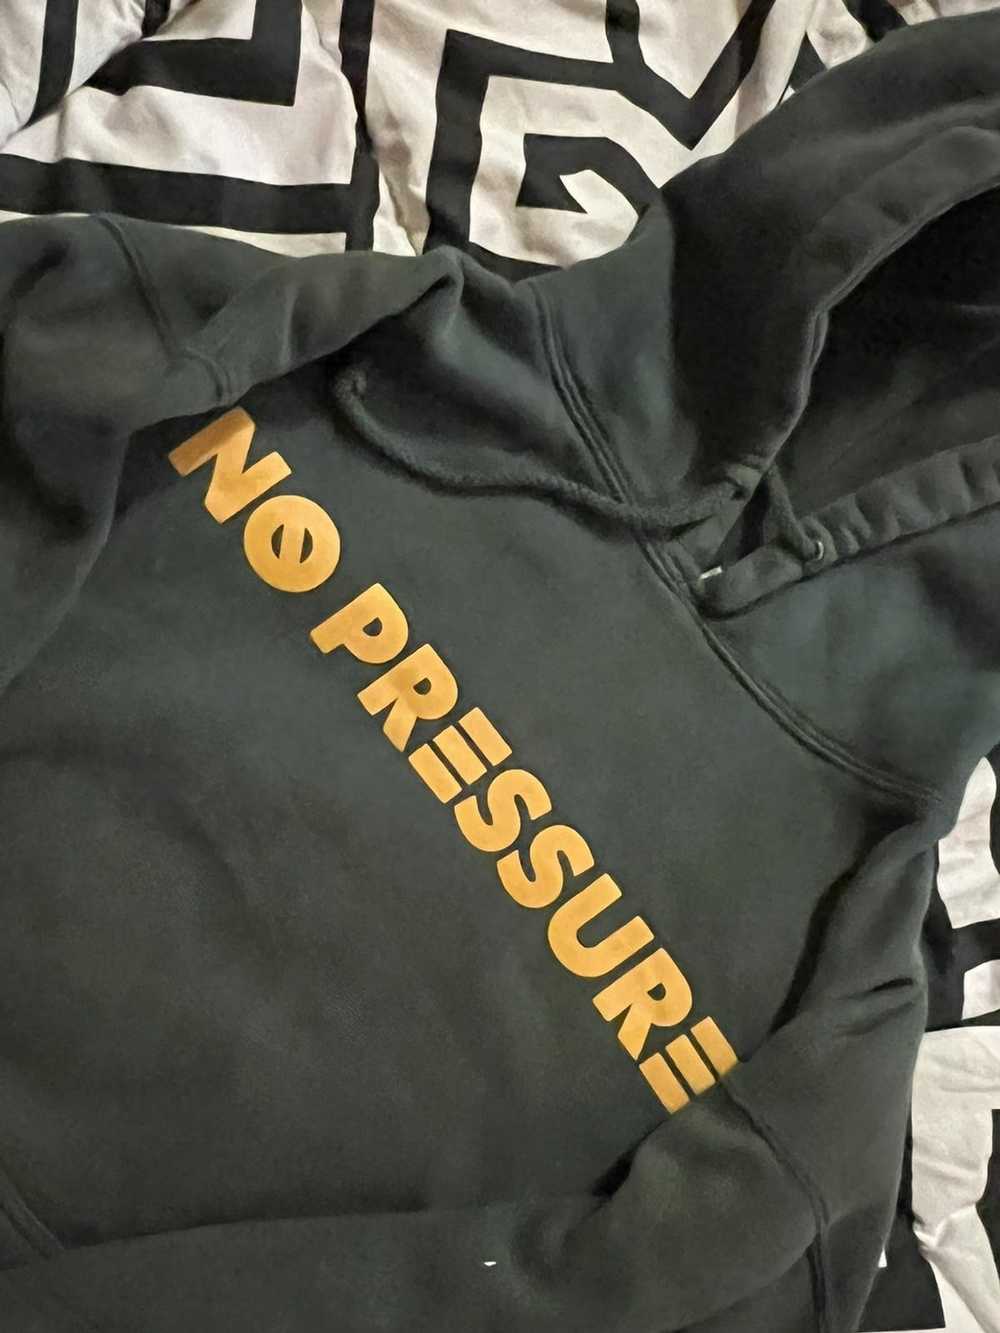 Logic No pressure hoodie - image 2